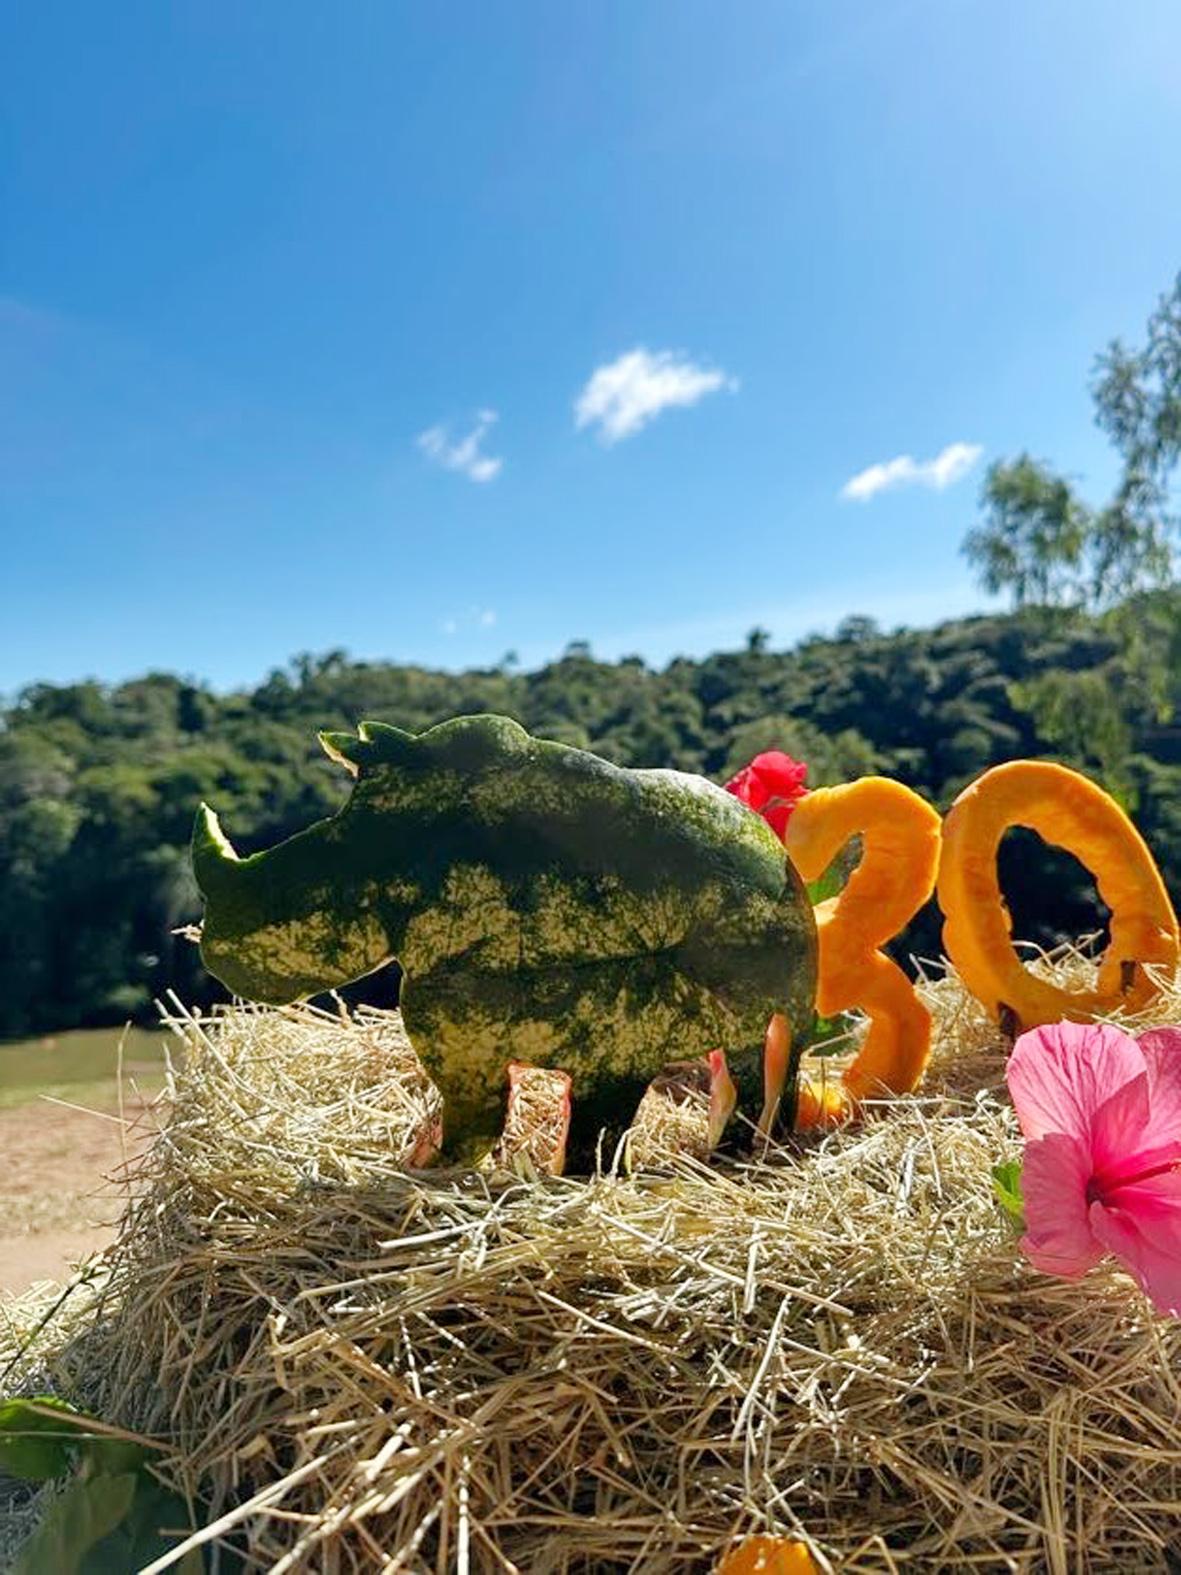 Reconhecido mundialmente, Zooparque Itatiba completa 30 anos